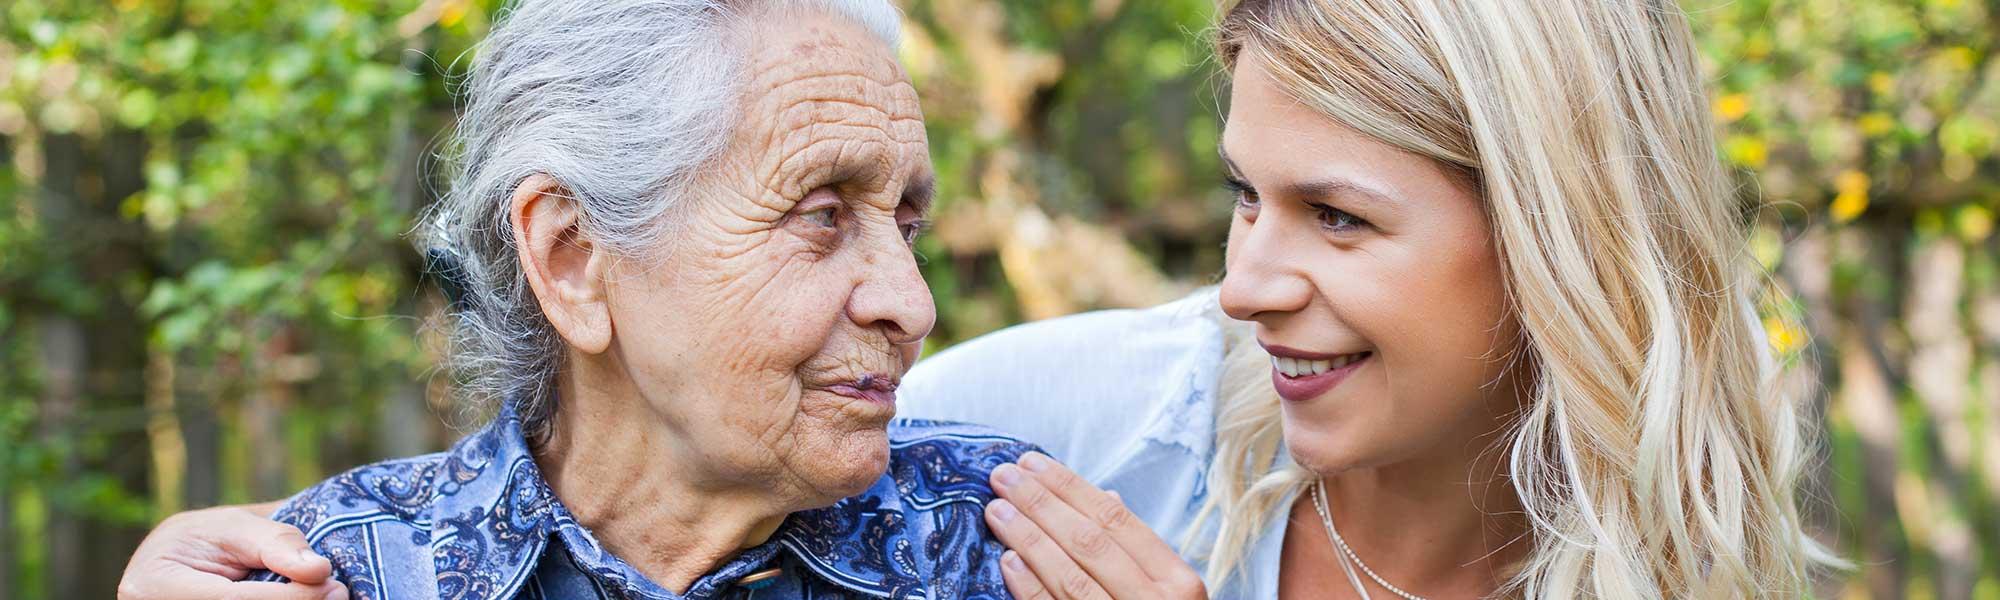 Quelles sont les principales démences qui touchent les personnes âgées ?